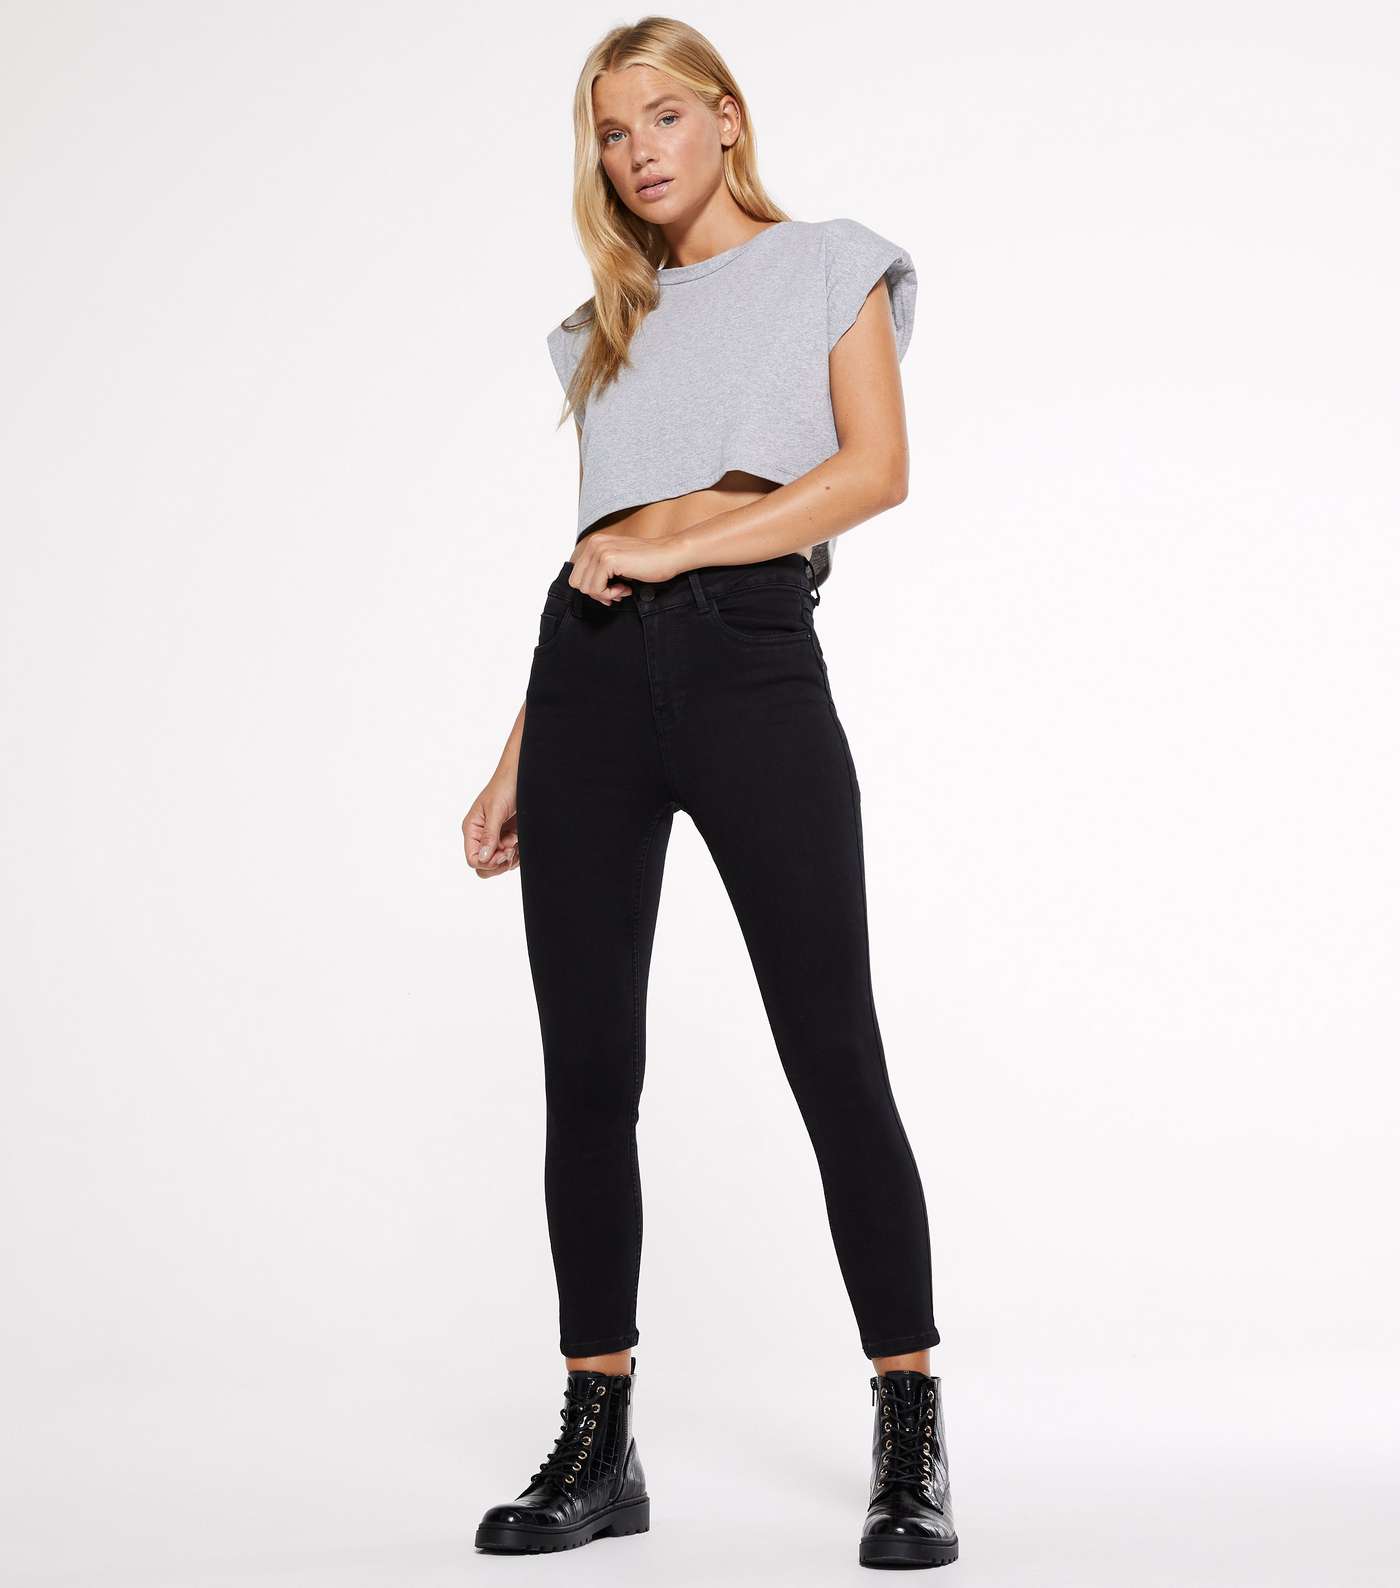 Petite Short Leg Black 'Lift & Shape' Jenna Skinny Jeans